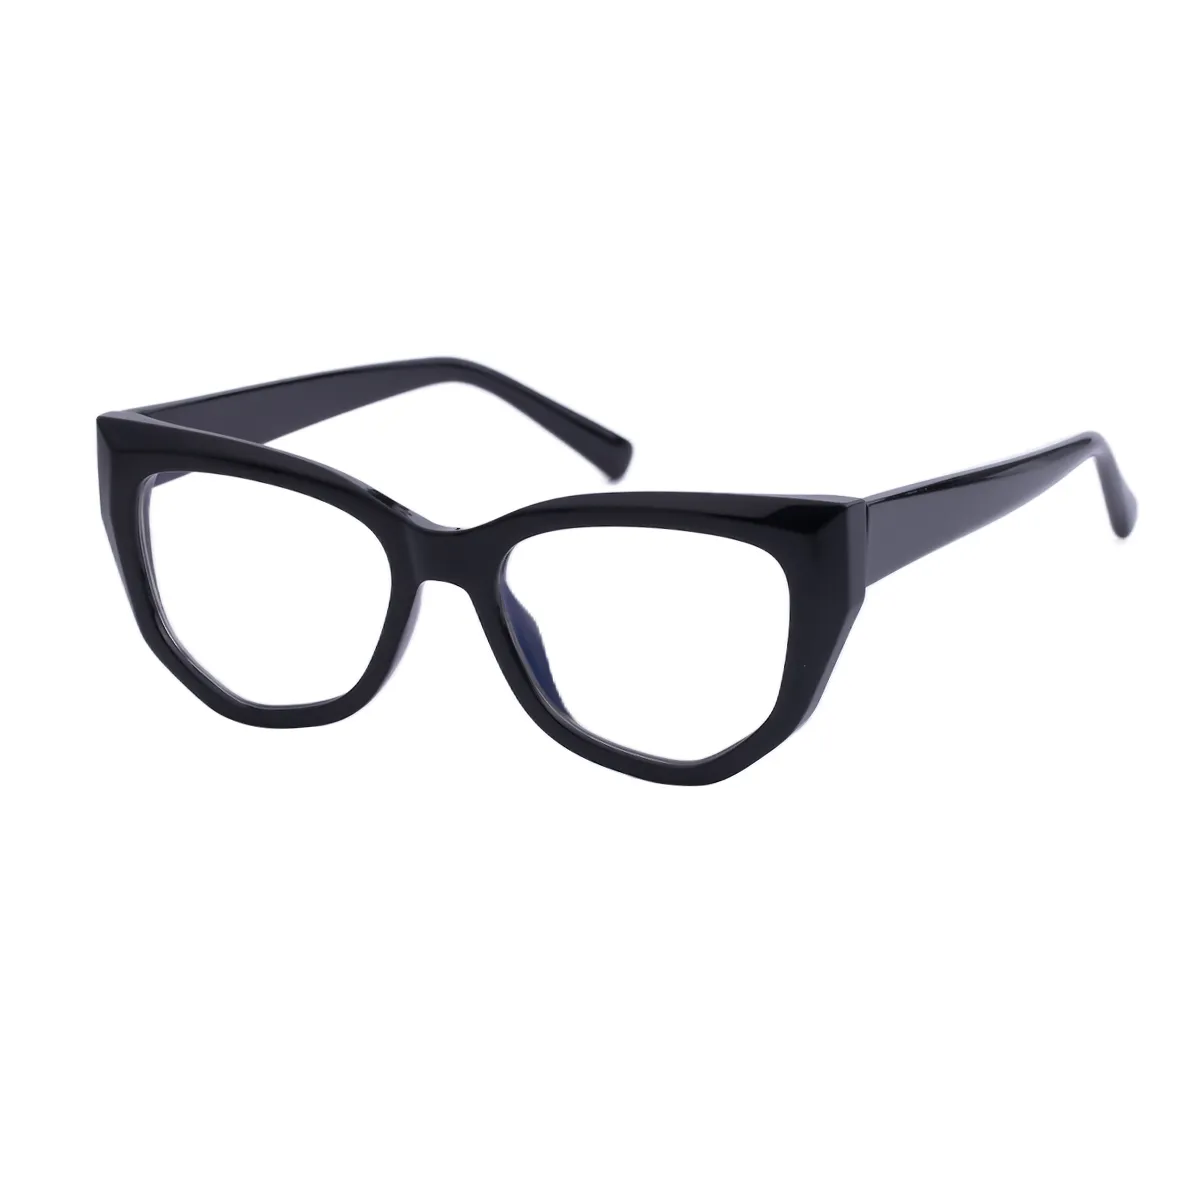 Fashion Geometric Blue Eyeglasses for Women